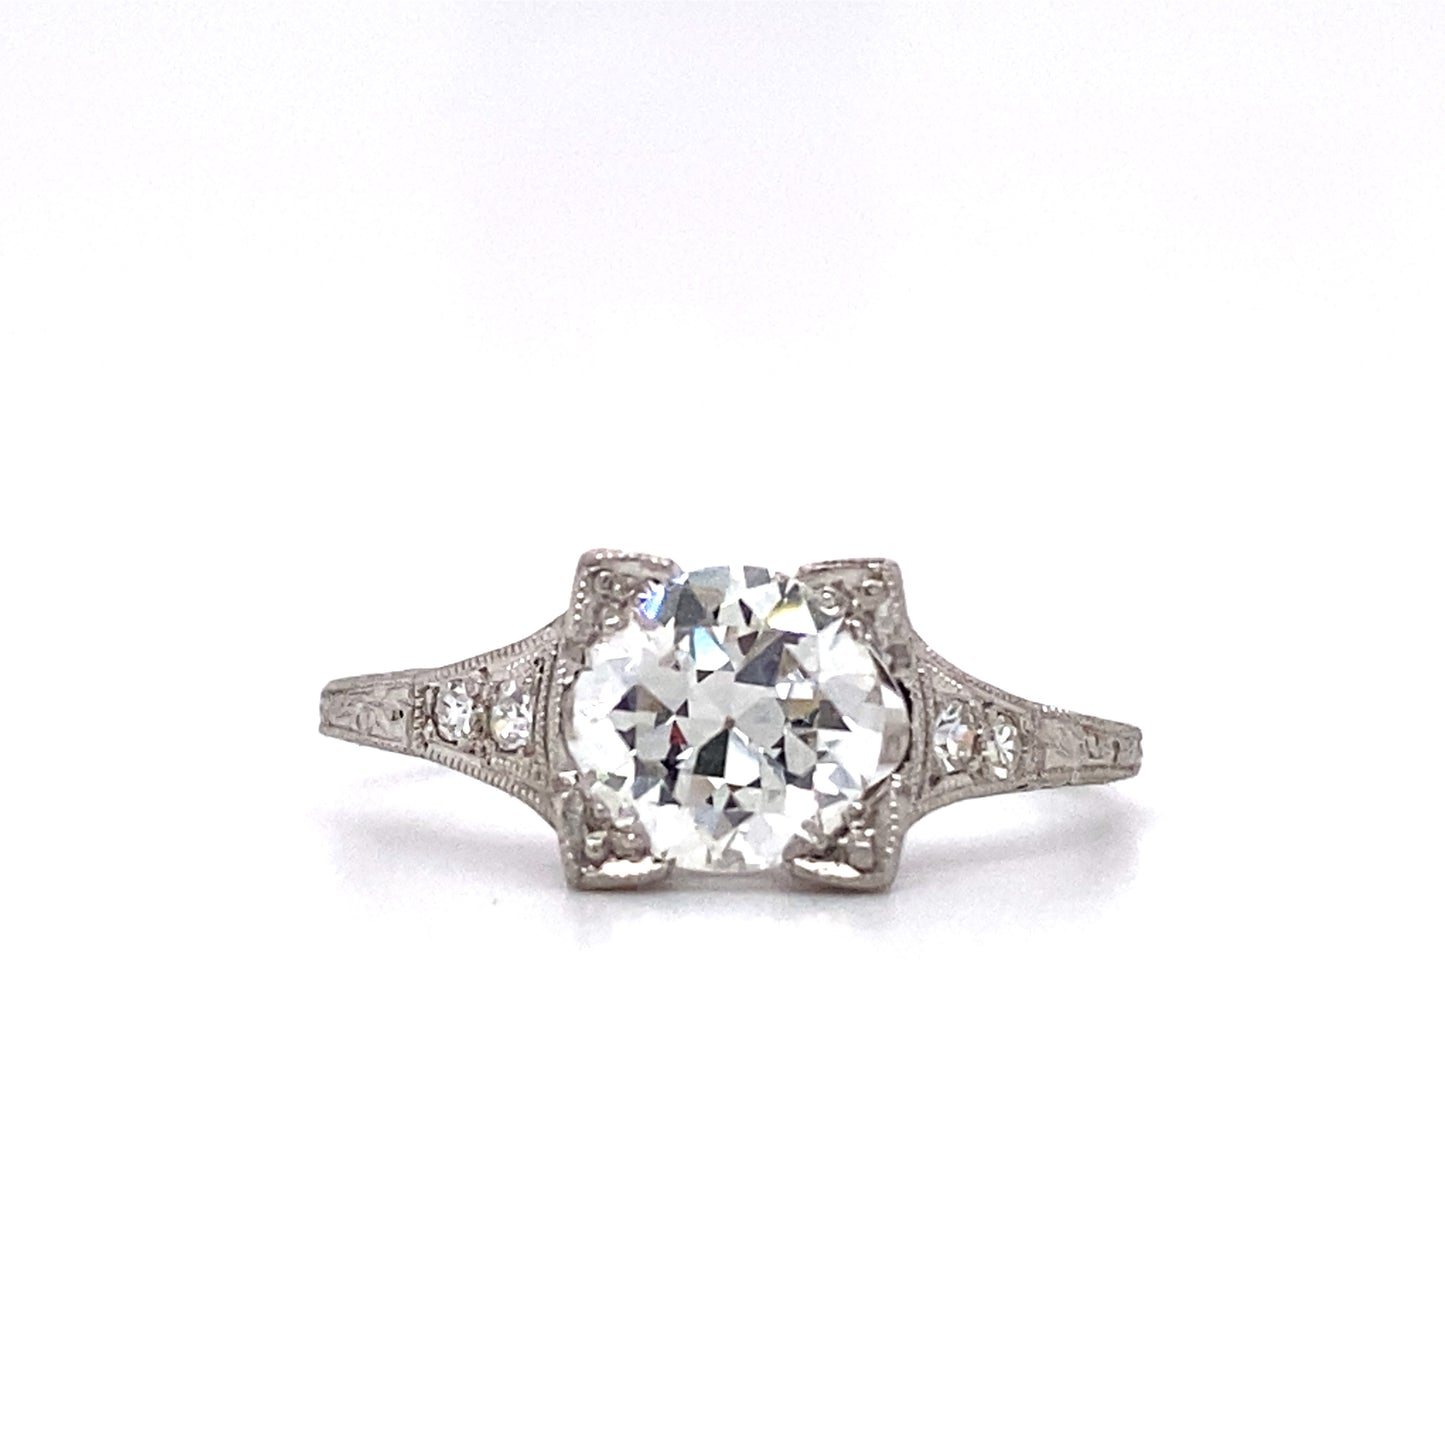 Circa 1920s Art Deco 1.08 Carat Diamond Engagement Ring in Platinum